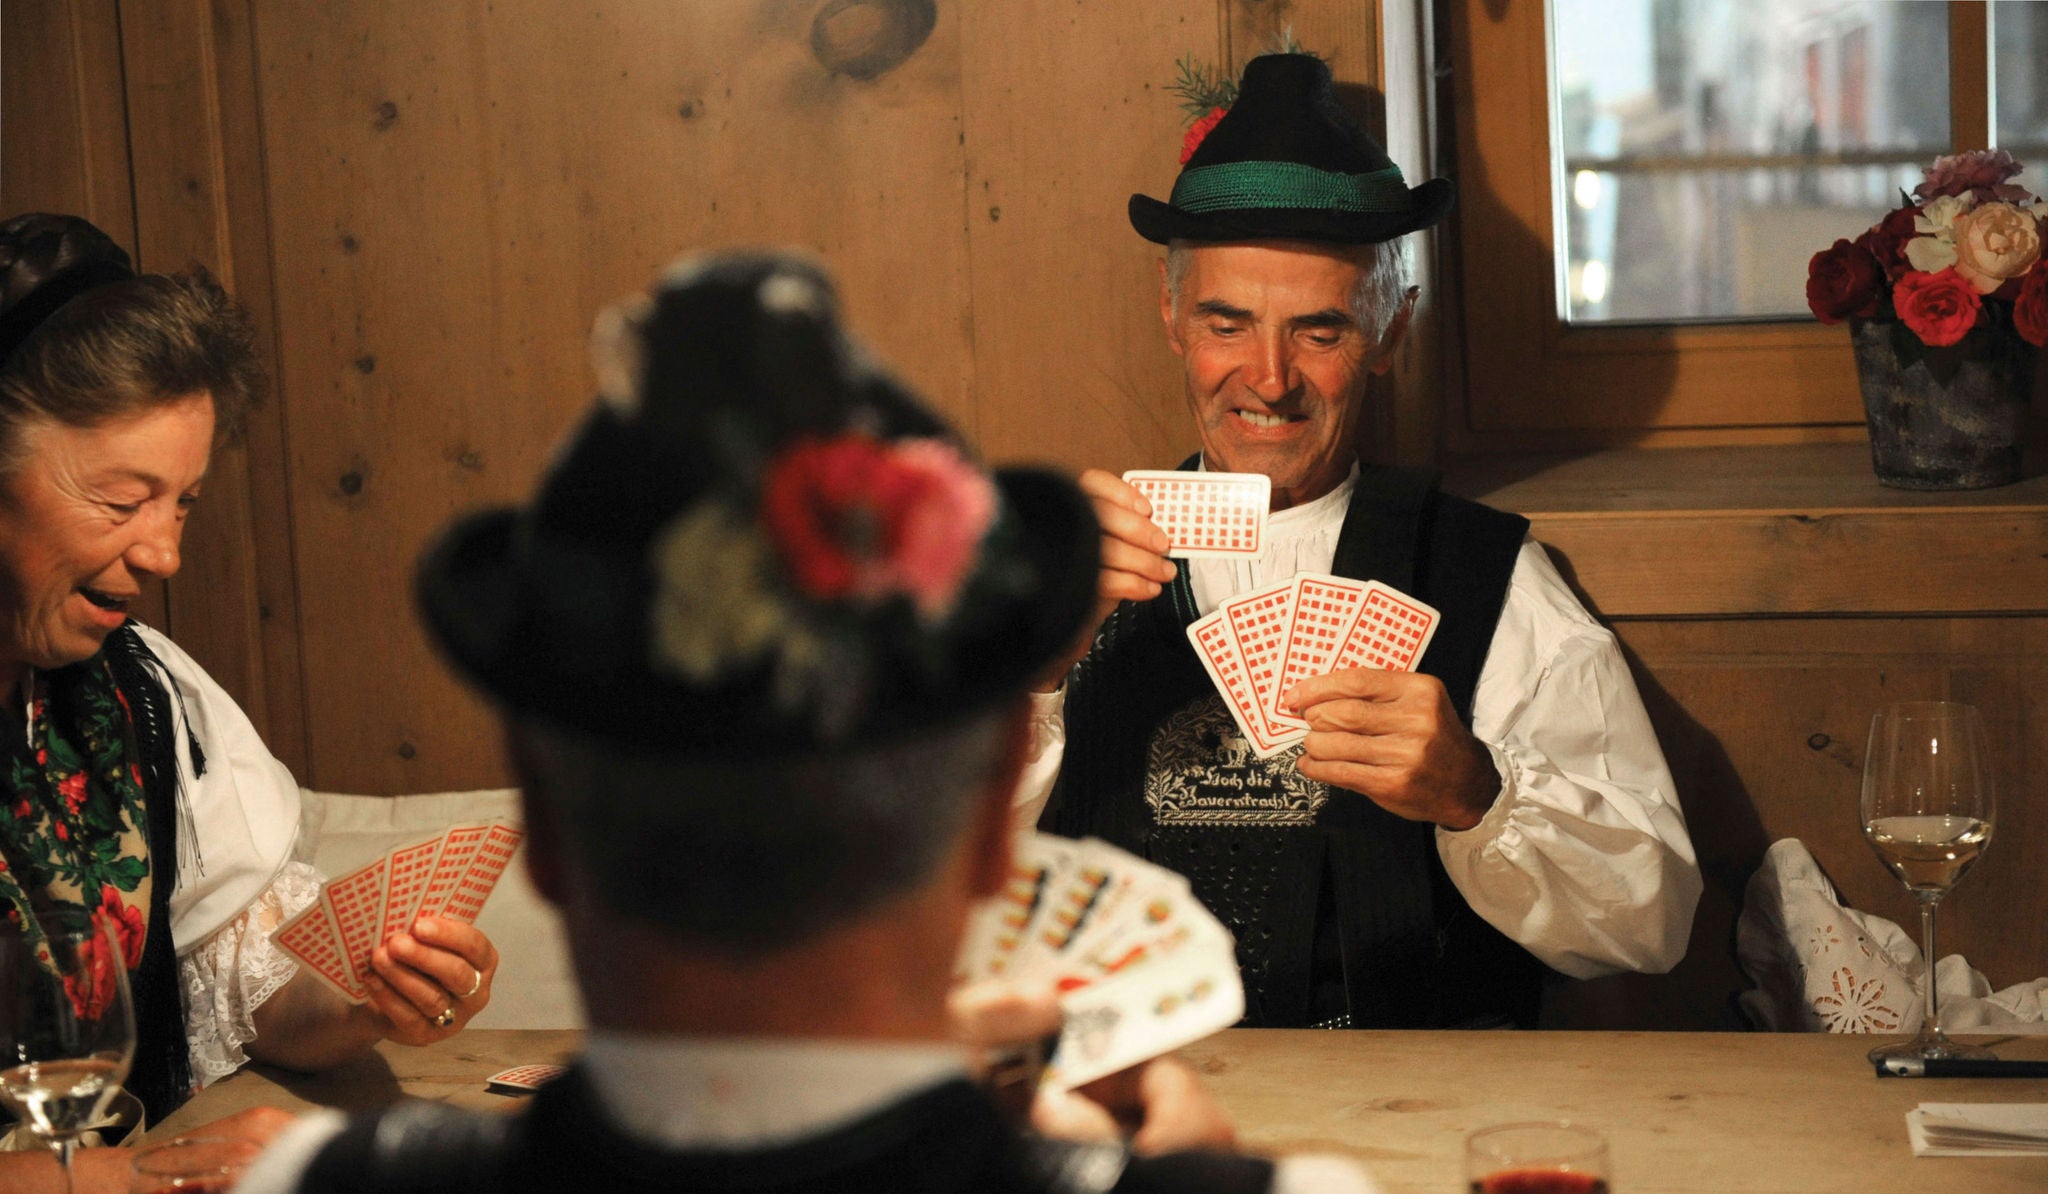 Drei Personen in traditioneller Tracht am Stubentisch beim "Watten" - ein typisches Kartenspiel in Südtirol